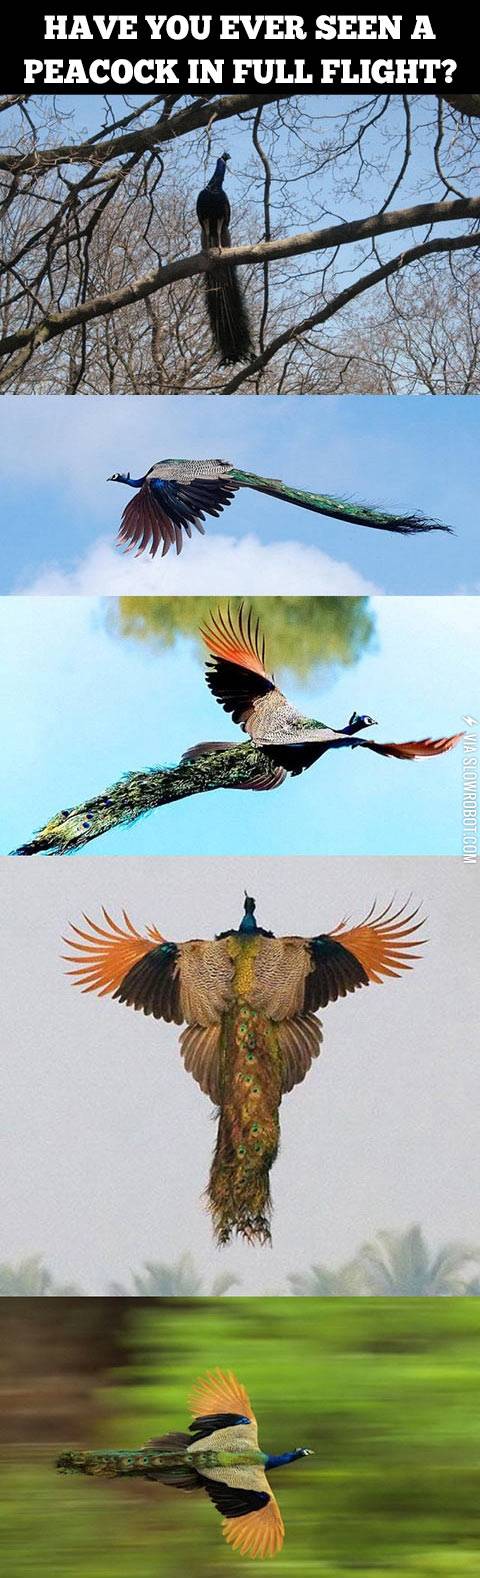 A+peacock+in+full+flight.